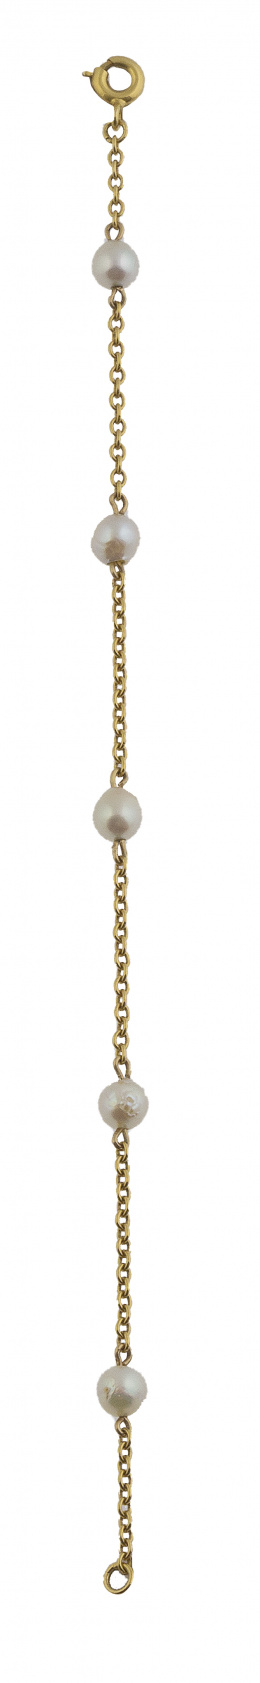 201.  Conjunto de dos pulseritas,una con cuentas de perlas y otra de coral con cadena de oro